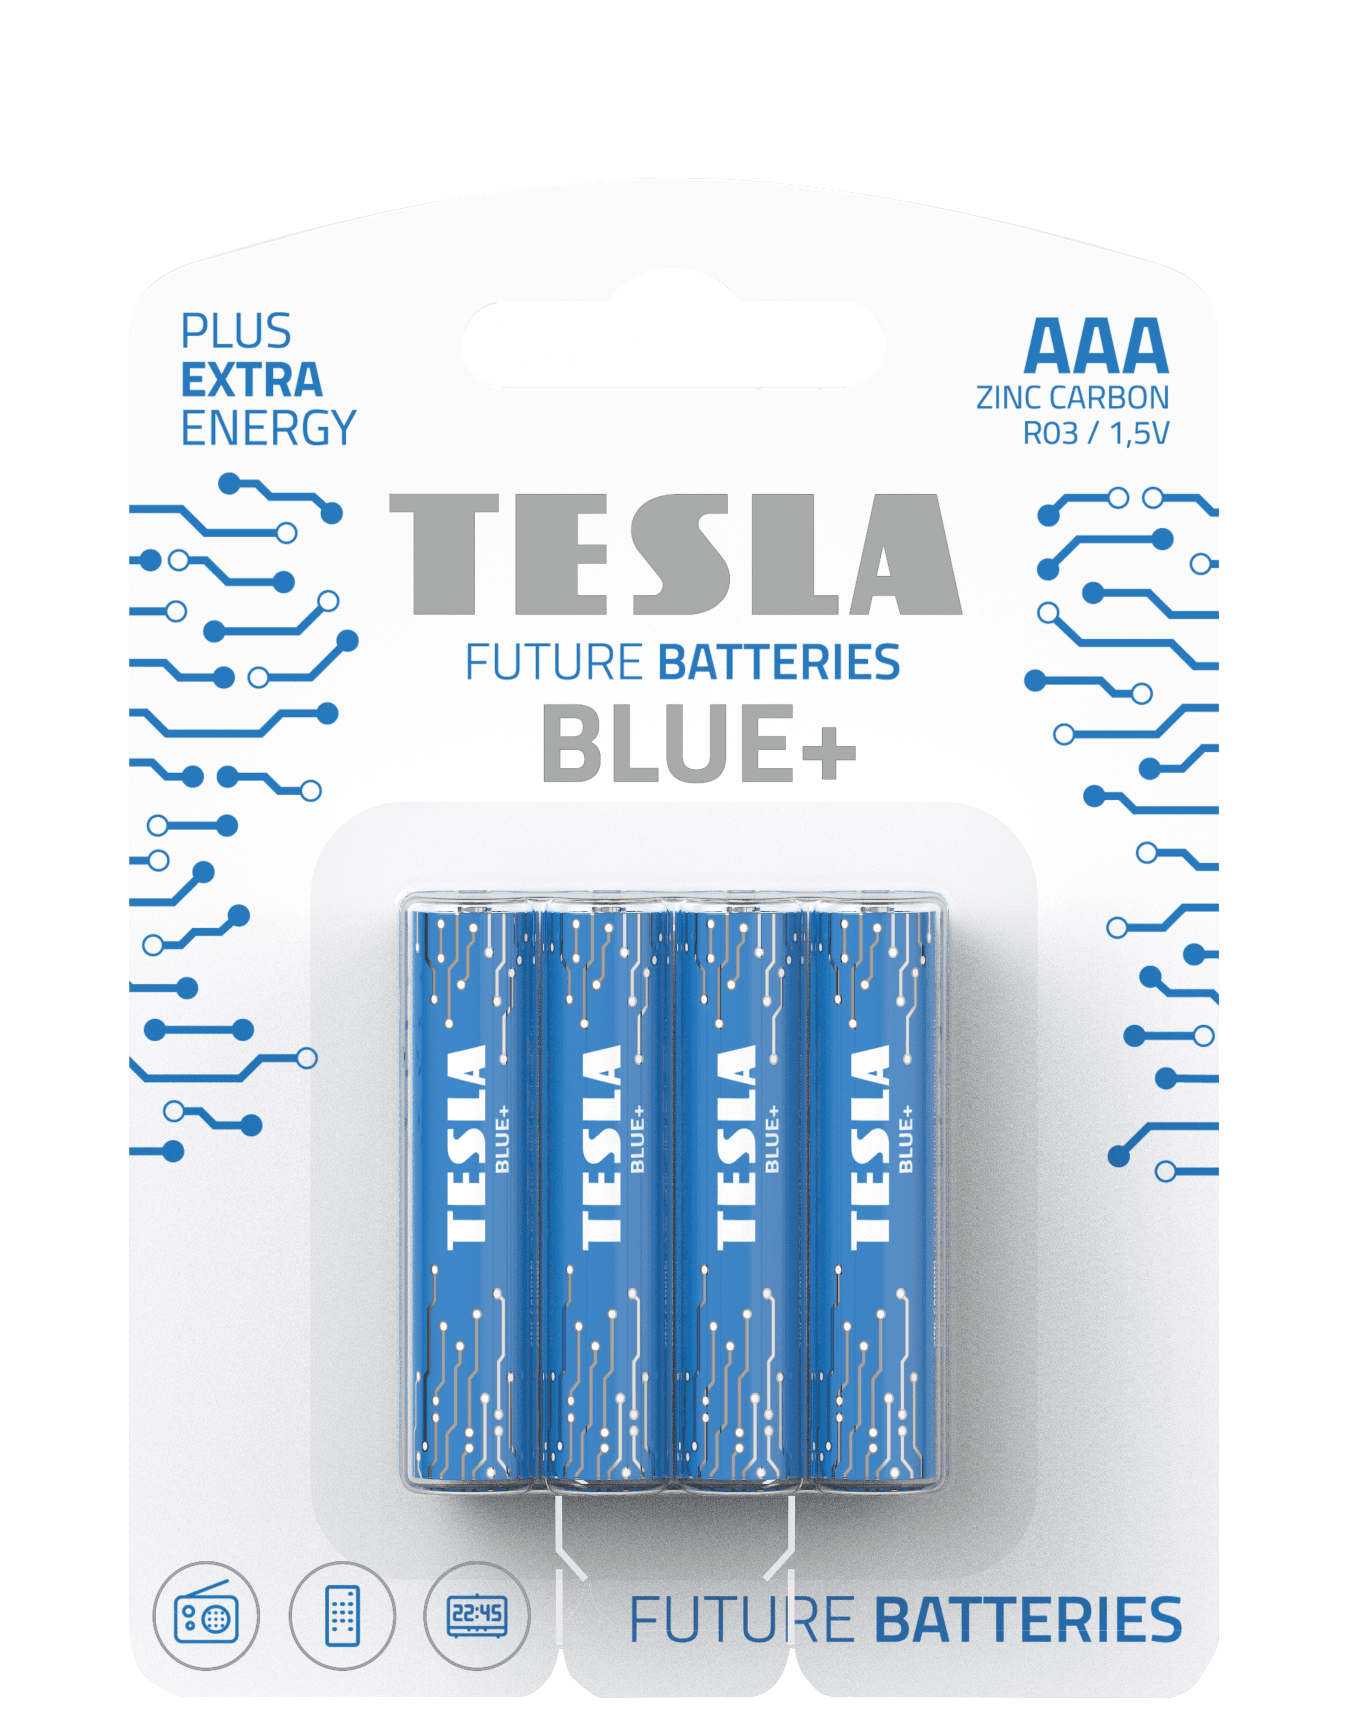 Zinc-carbon batteries TESLA AAA/R03/1,5V 4pcs BLUE+